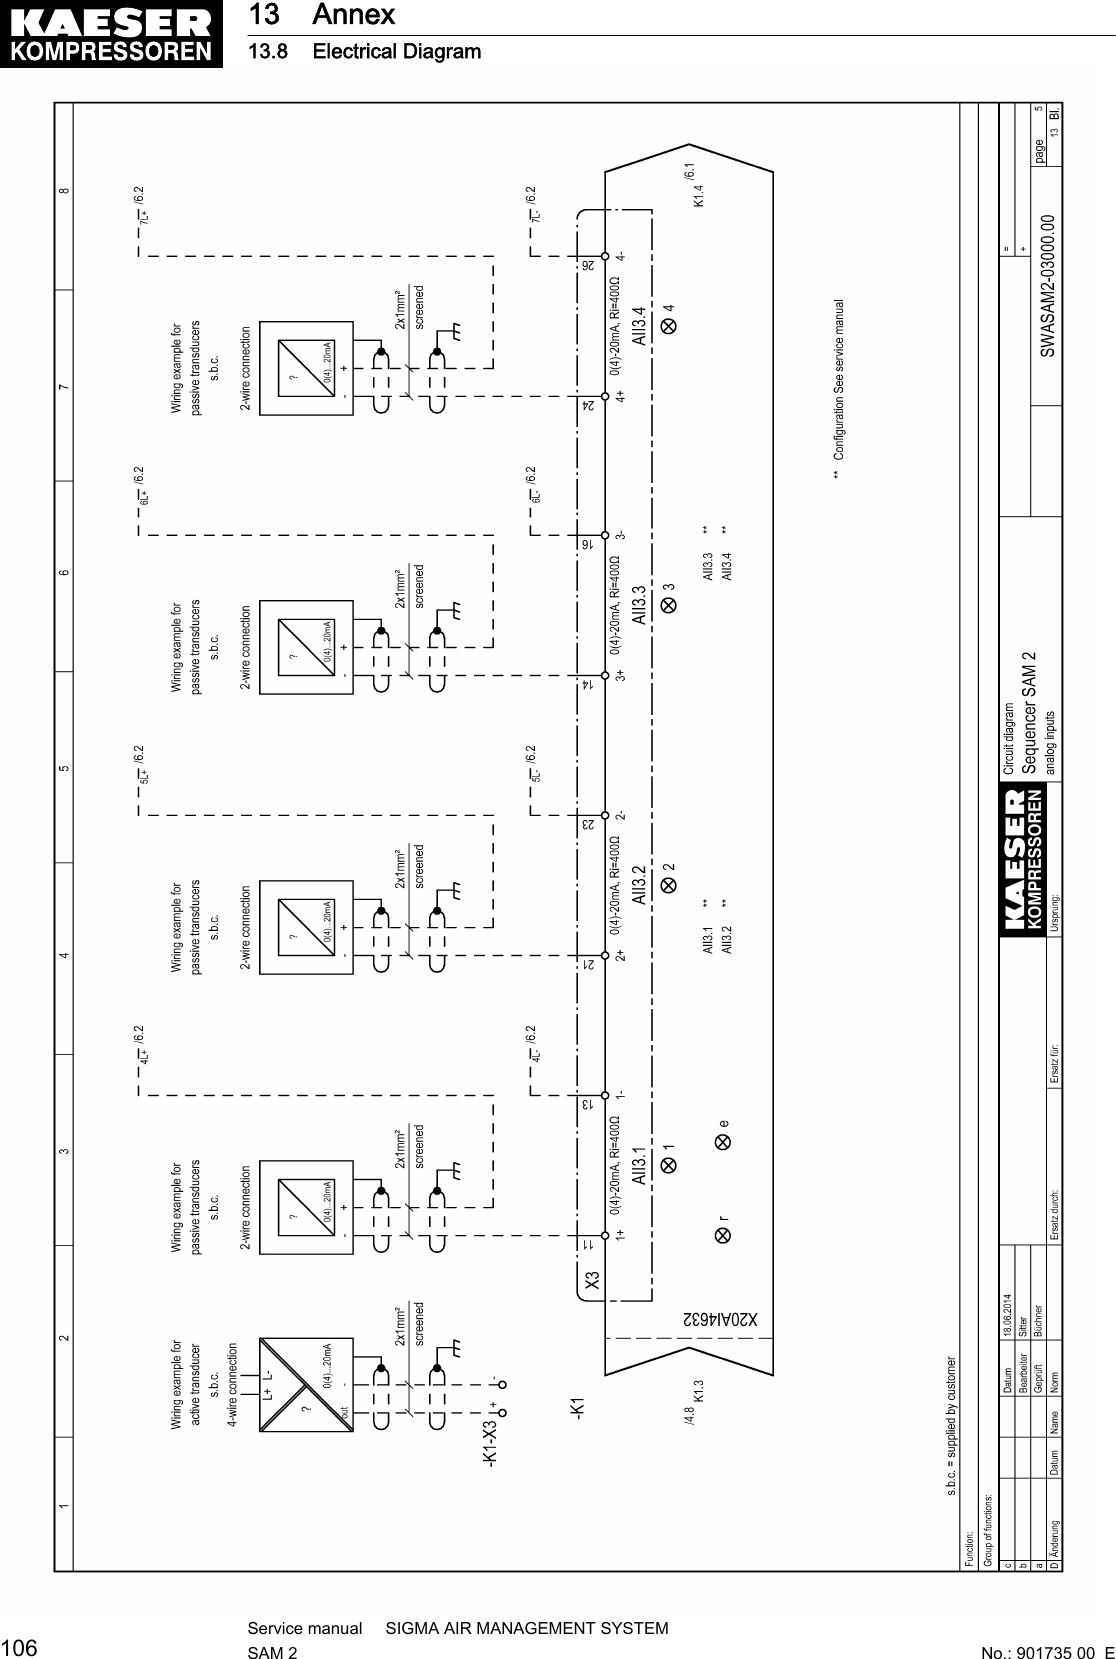 13 Annex13.8 Electrical Diagram106Service manual     SIGMA AIR MANAGEMENT SYSTEMSAM 2  No.: 901735 00  E